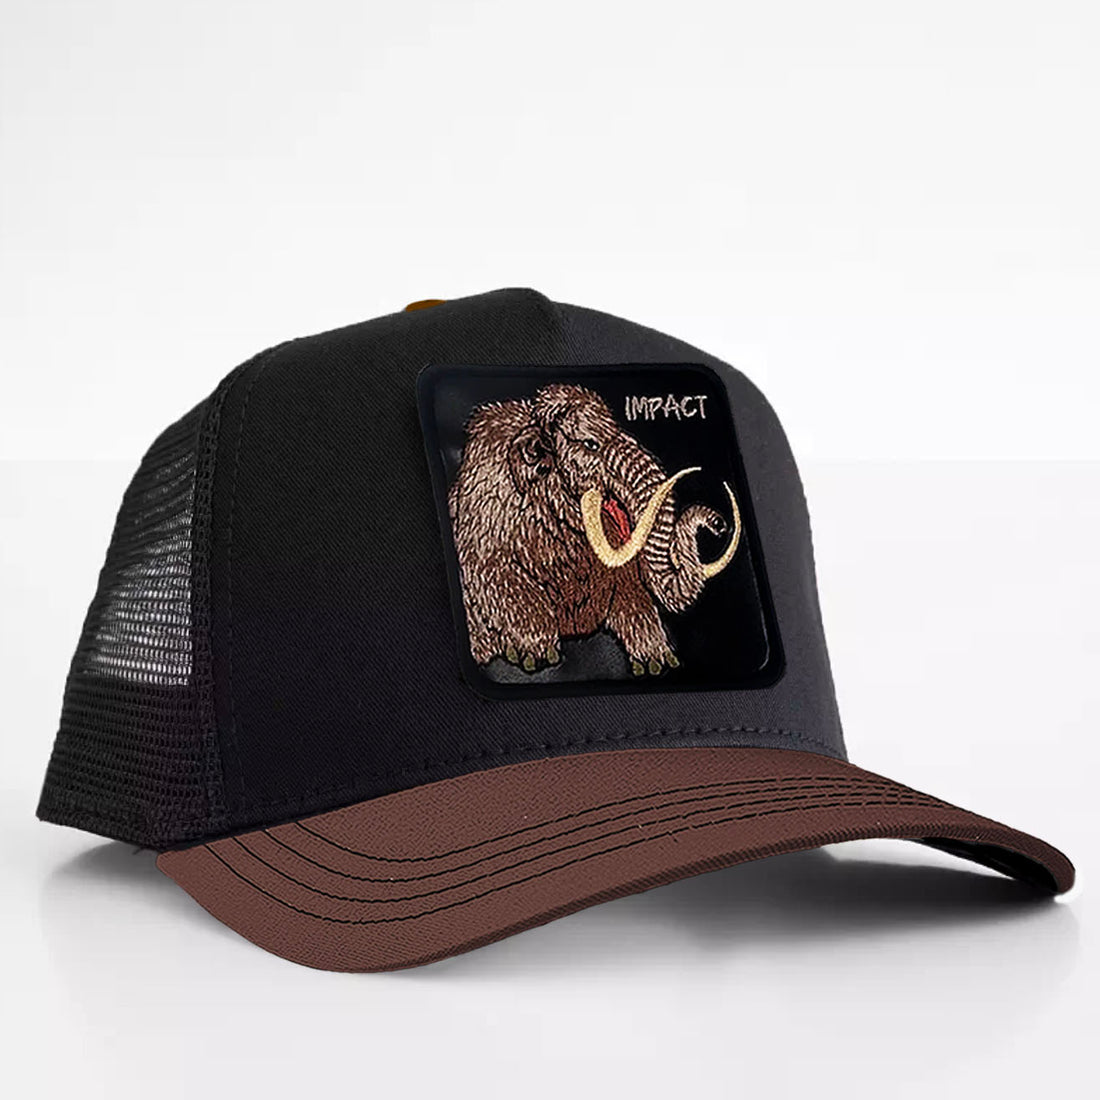 Mammoth - "Impact" Trucker Hat